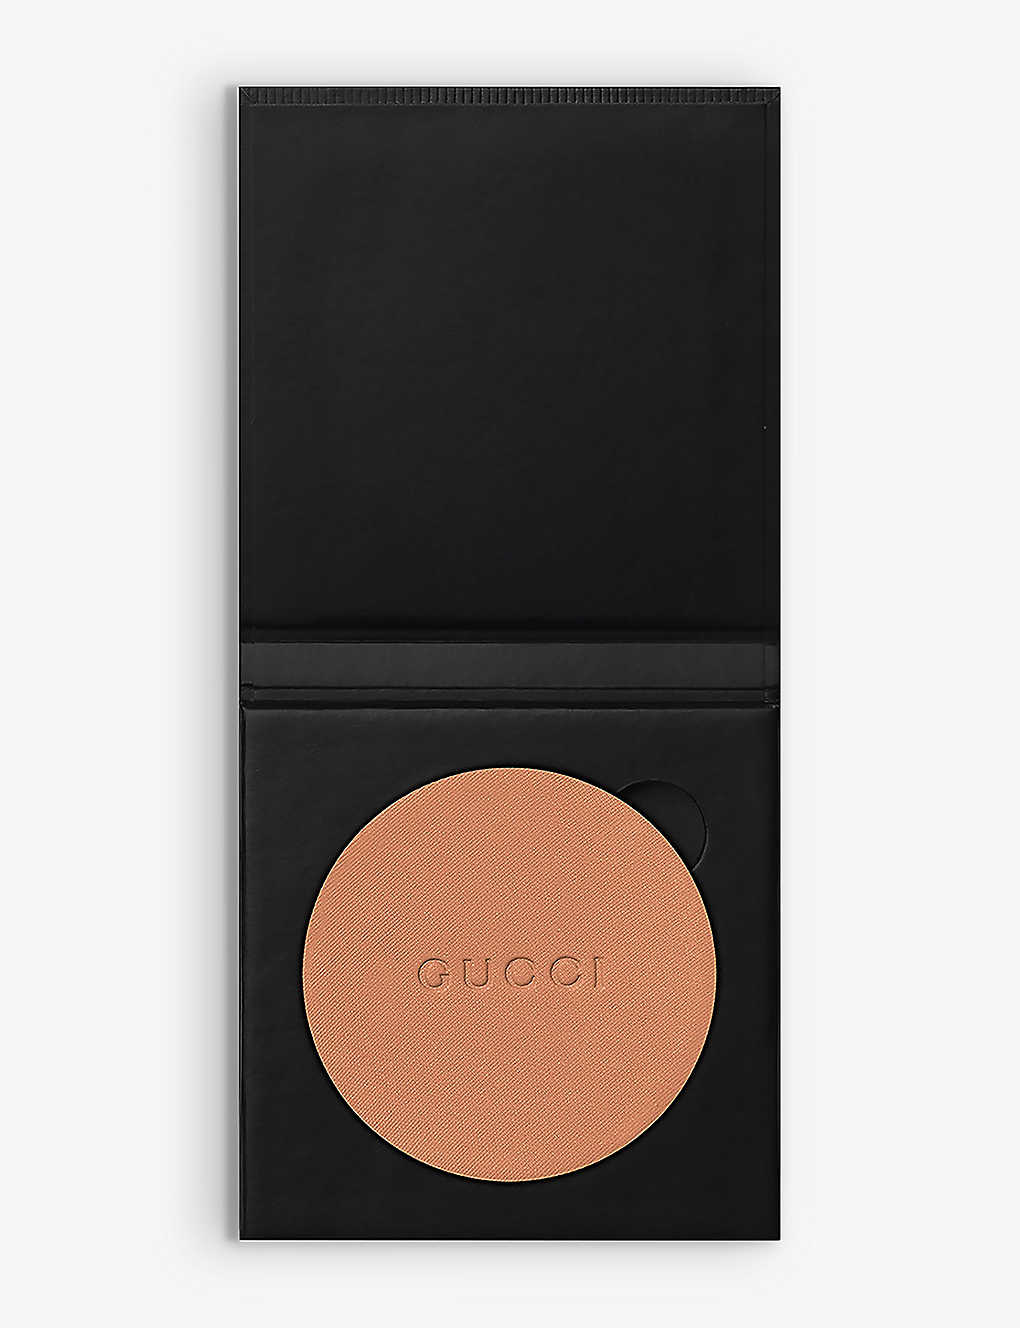 Gucci 9 Poudre De Beauté Matte Compact Powder Refill 10g